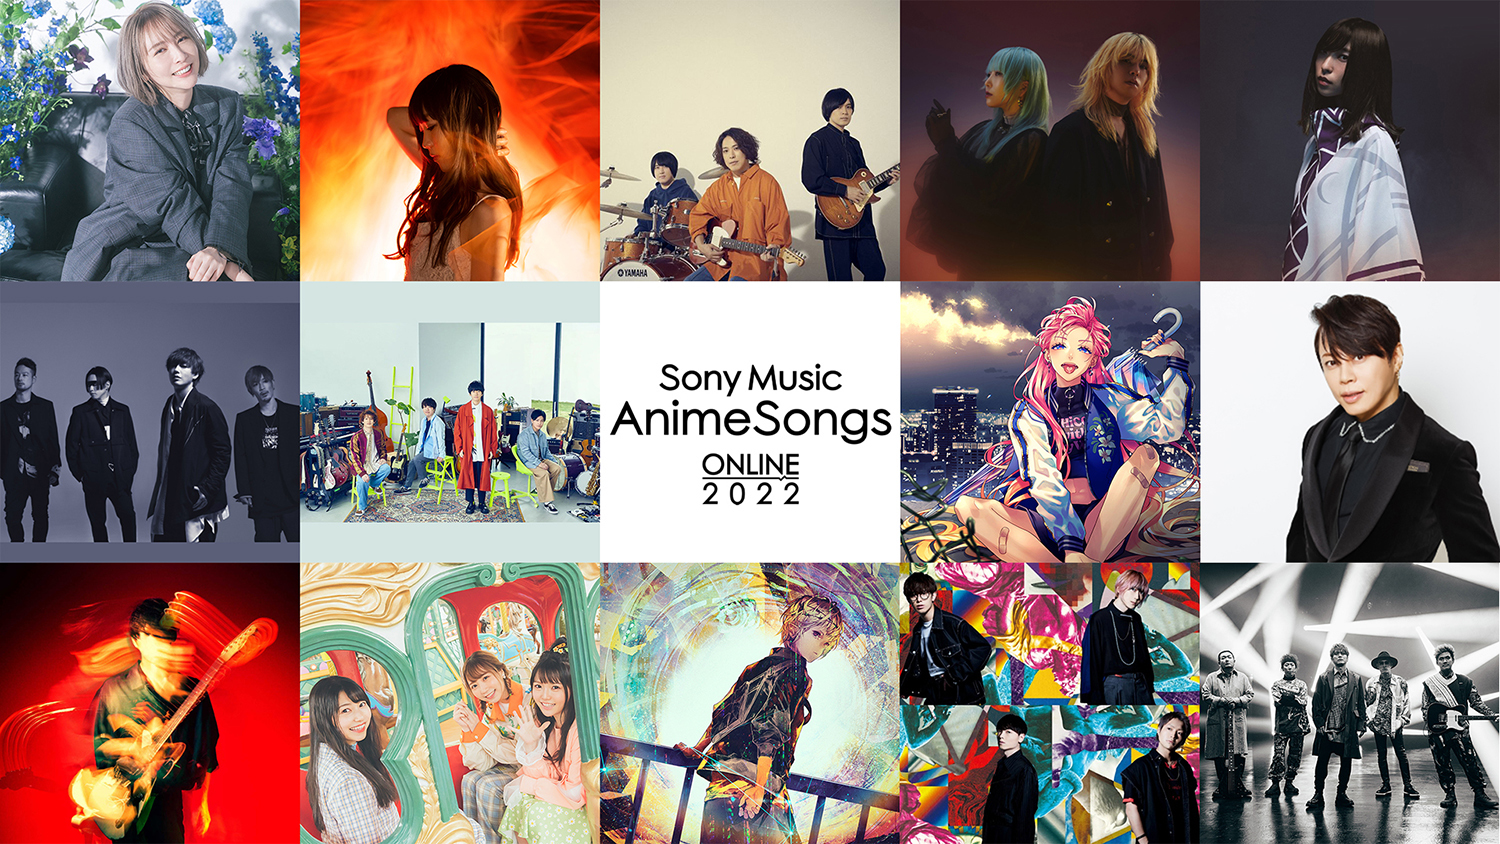 yMUSIC ON! TViGI!jz؃A[eBXgWIAj̃ICtFXuSony Music AnimeSongs ONLINE 2022vGI!2I